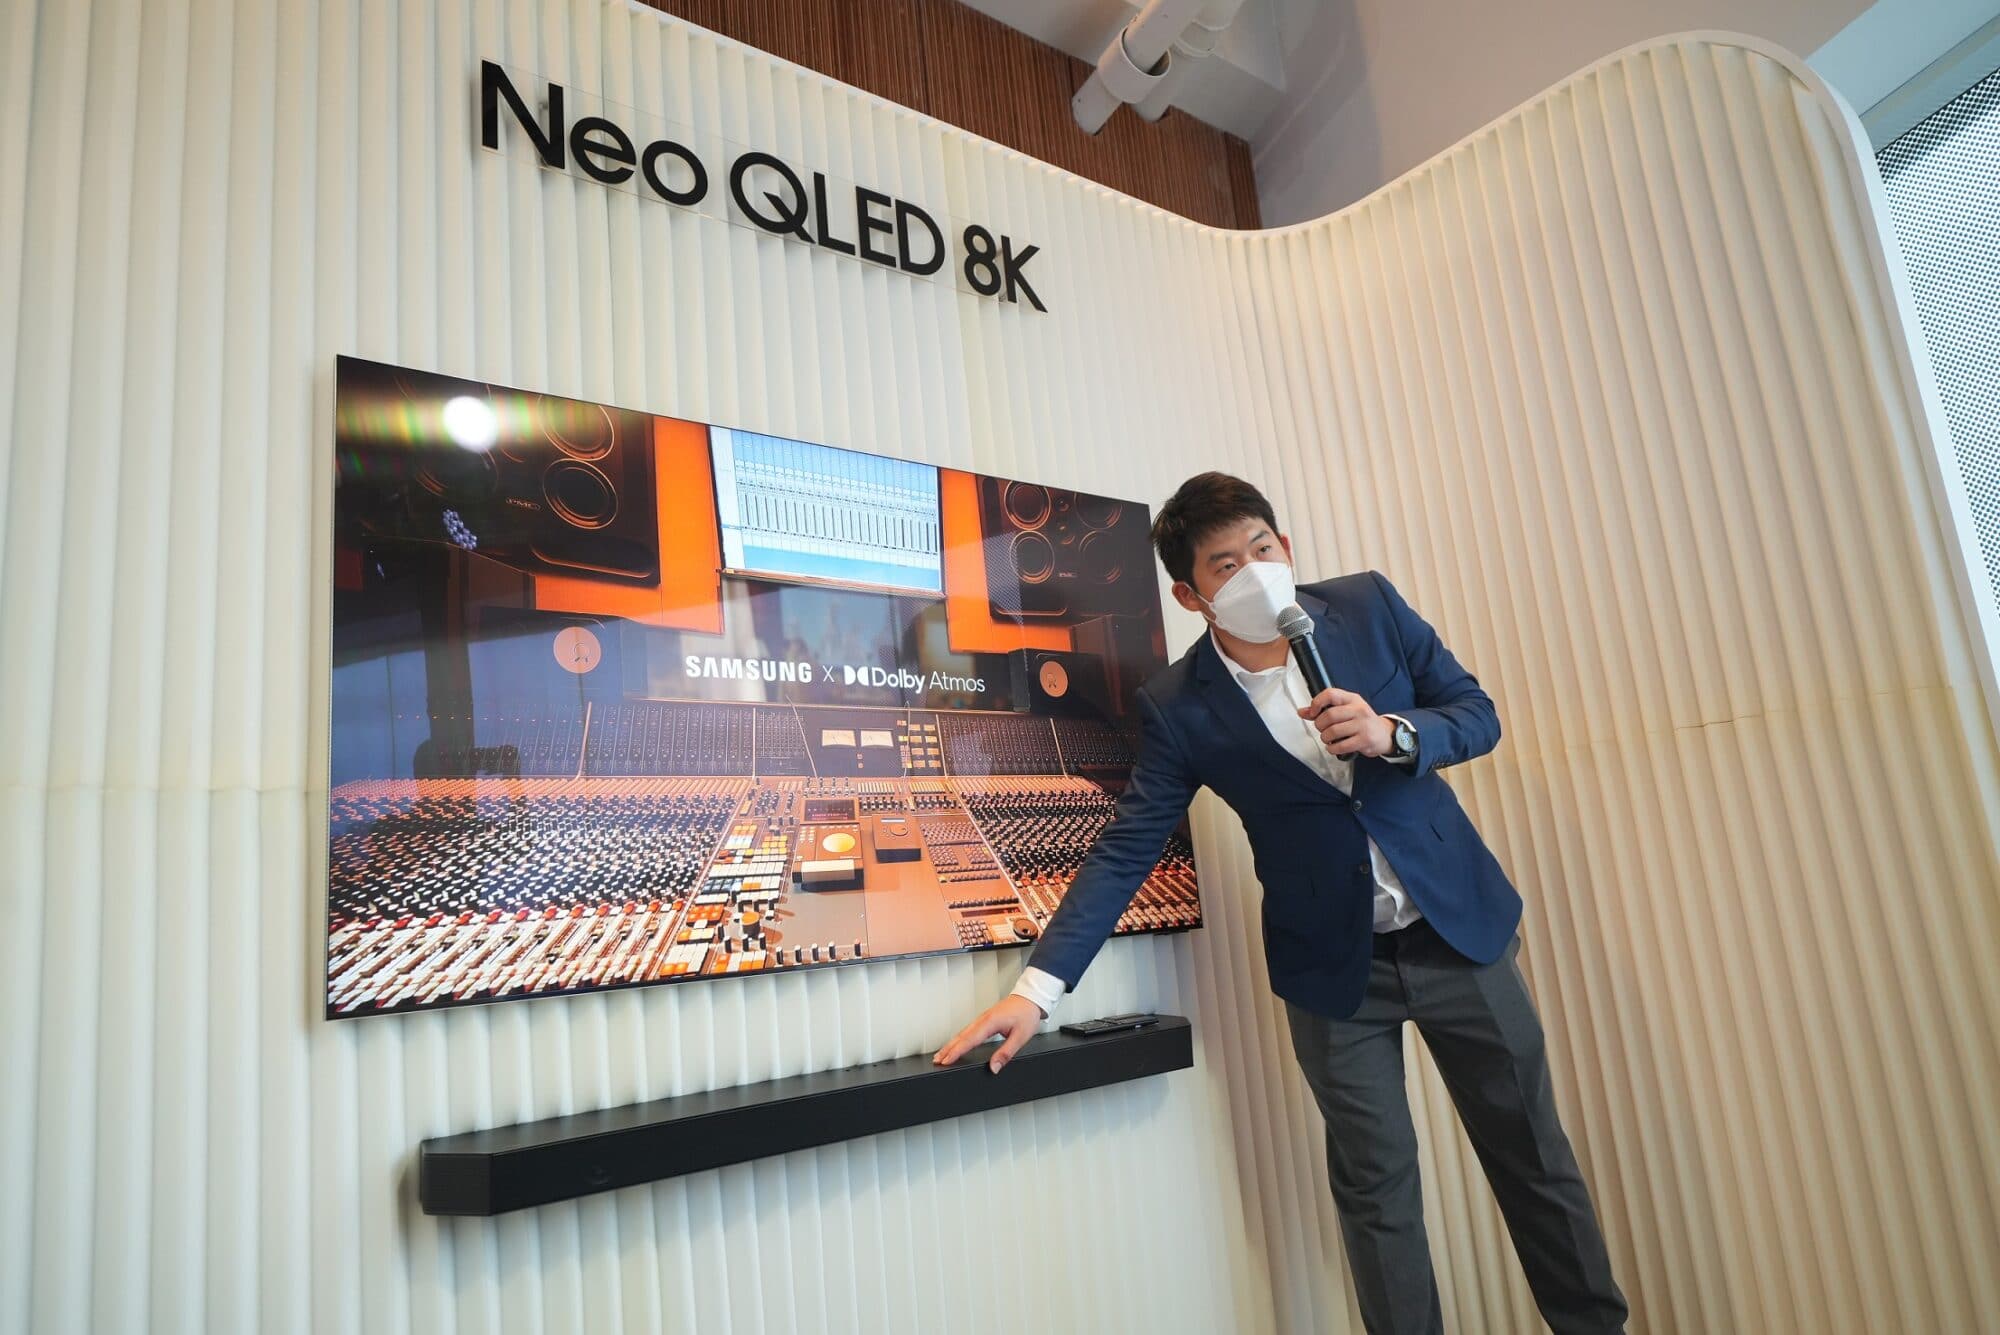 ซัมซุงเผยโฉมพรีเมียมไลน์อัพ Neo QLED 8K แห่งปี 2022 ชูจุดเด่นนวัตกรรมที่เป็นมากกว่าทีวี คมชัดไร้ขอบเขต อีกระดับของความสมบูรณ์แบบ 13